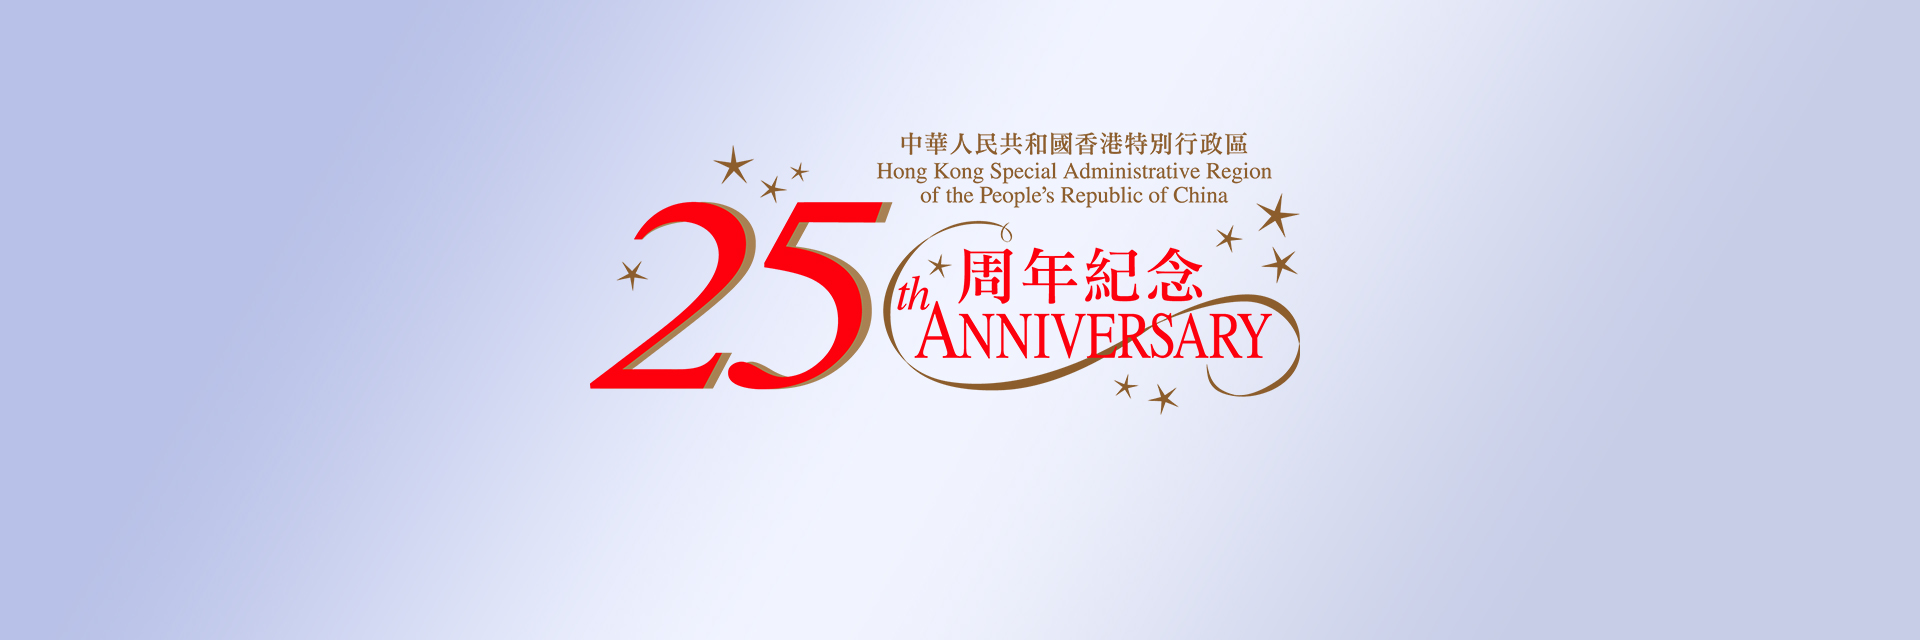 庆祝香港回归祖国25周年巡回展（成都）